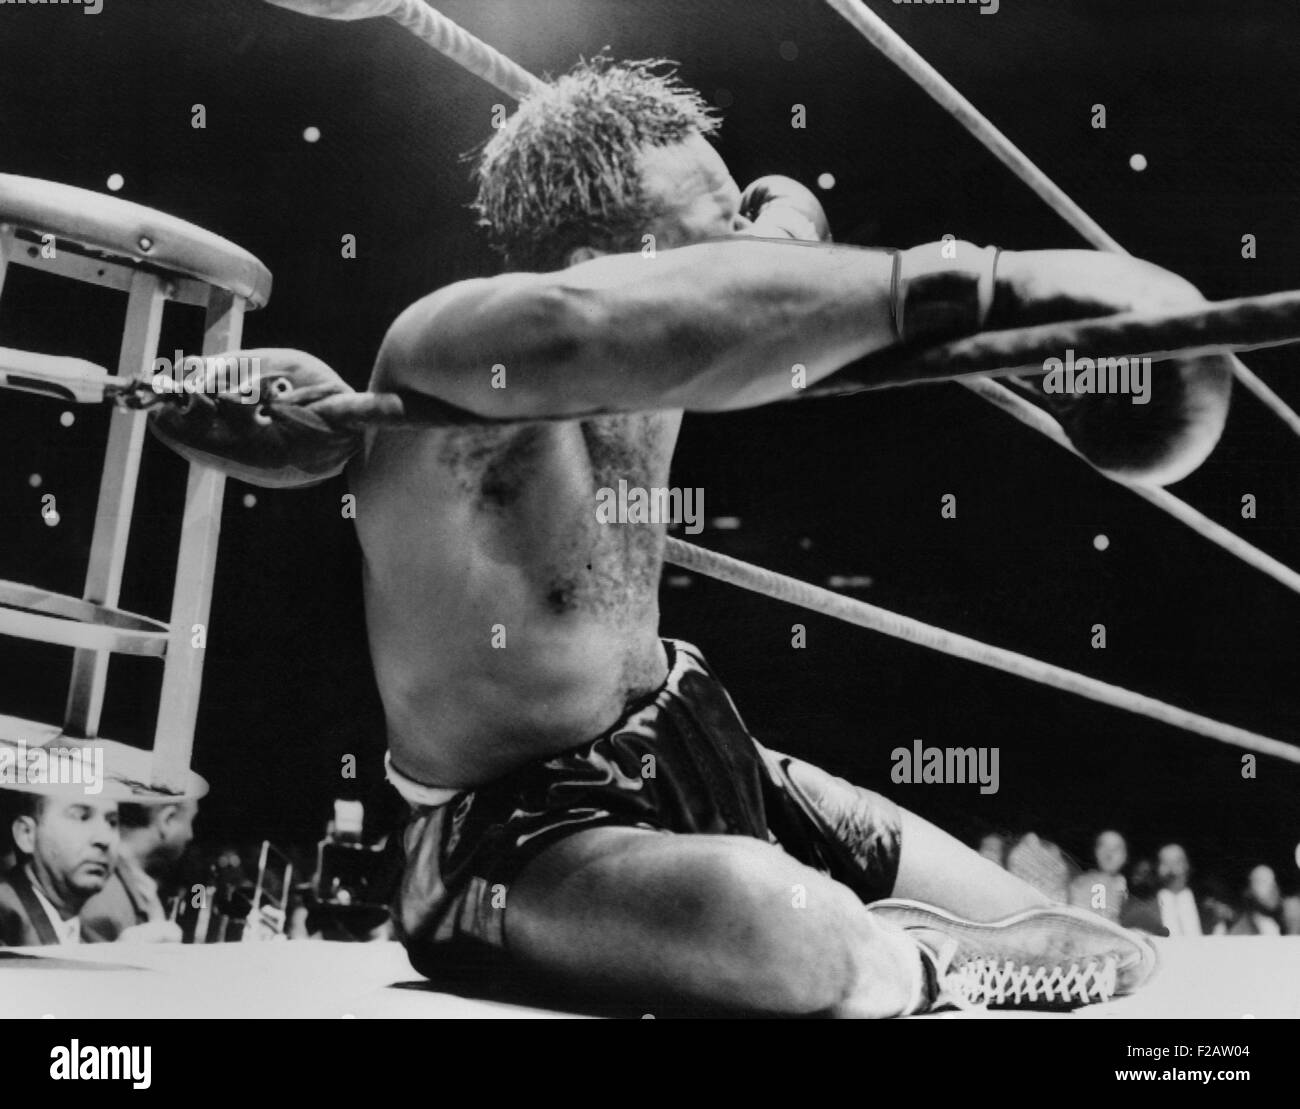 Archie Moore derribado por el Campeón de Peso Pesado Rocky Marciano, del 21 de septiembre, 1955. Era la novena ronda de su lucha por el título en el Estadio de los Yankees de Nueva York. (CSU 2015 11 1525) Foto de stock